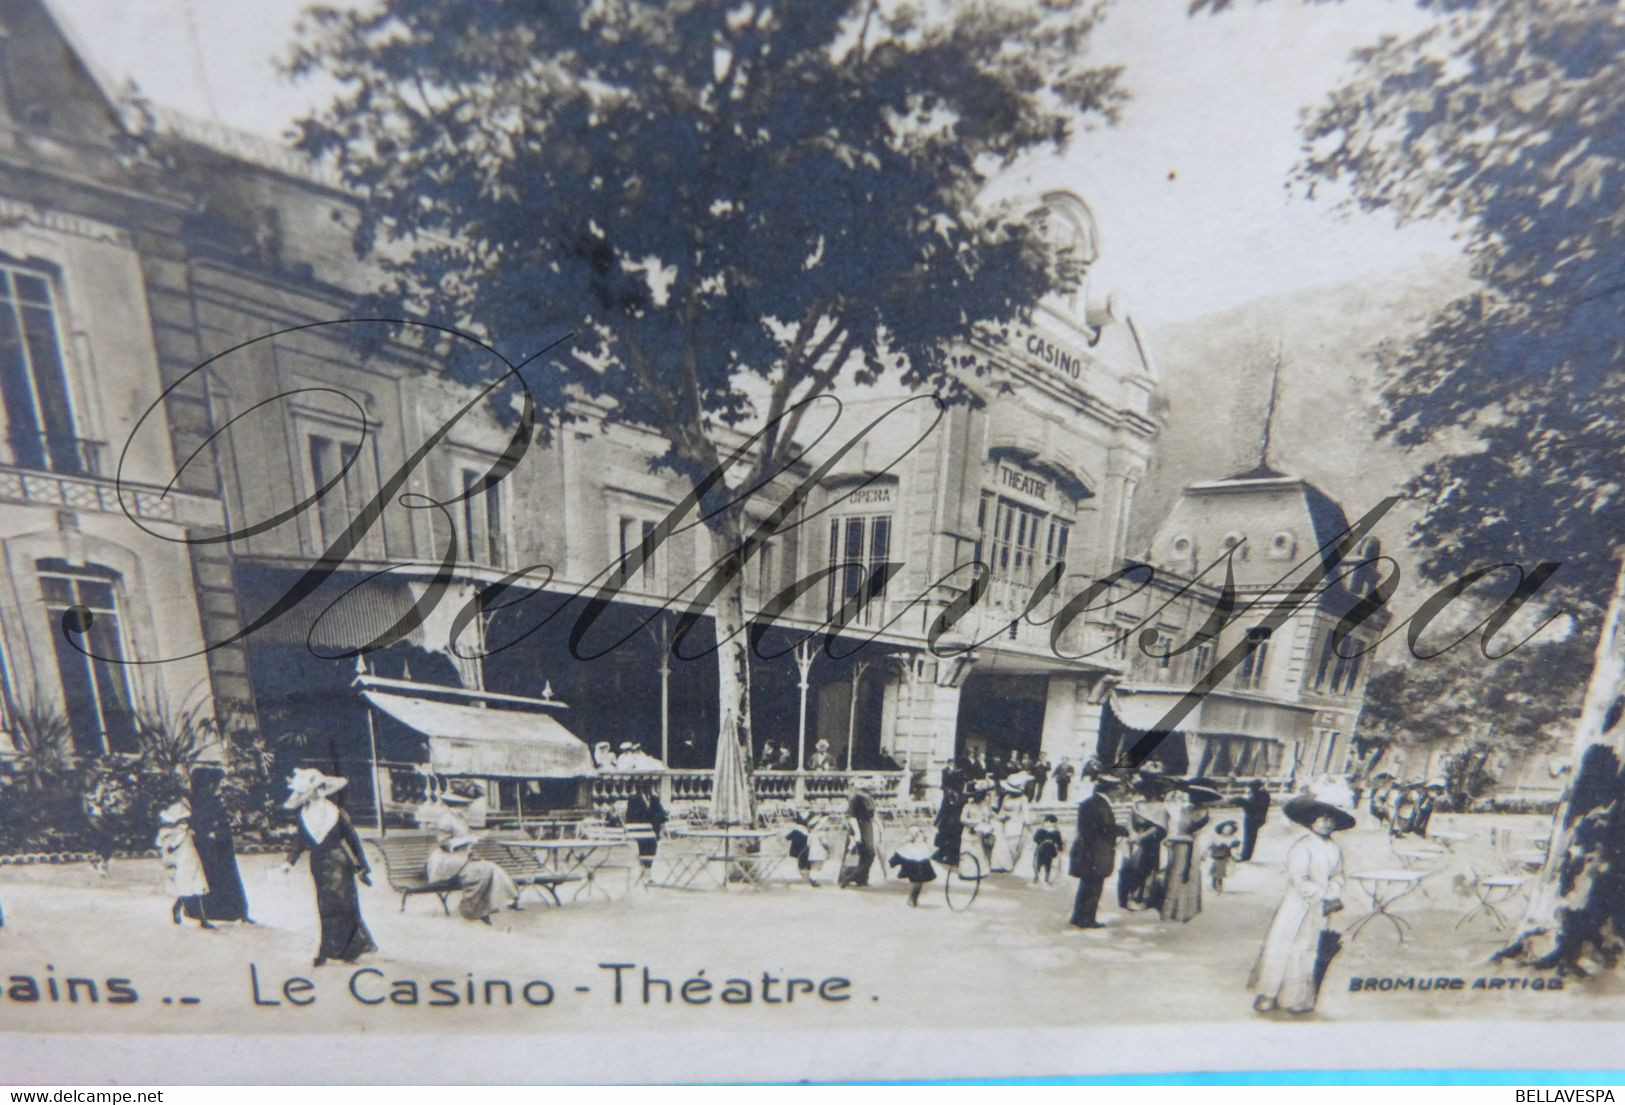 Vals-les-Bains. Le Casino-Théatre.  Edit Bromure Artige.Photo Montage. 1913 - Vals Les Bains